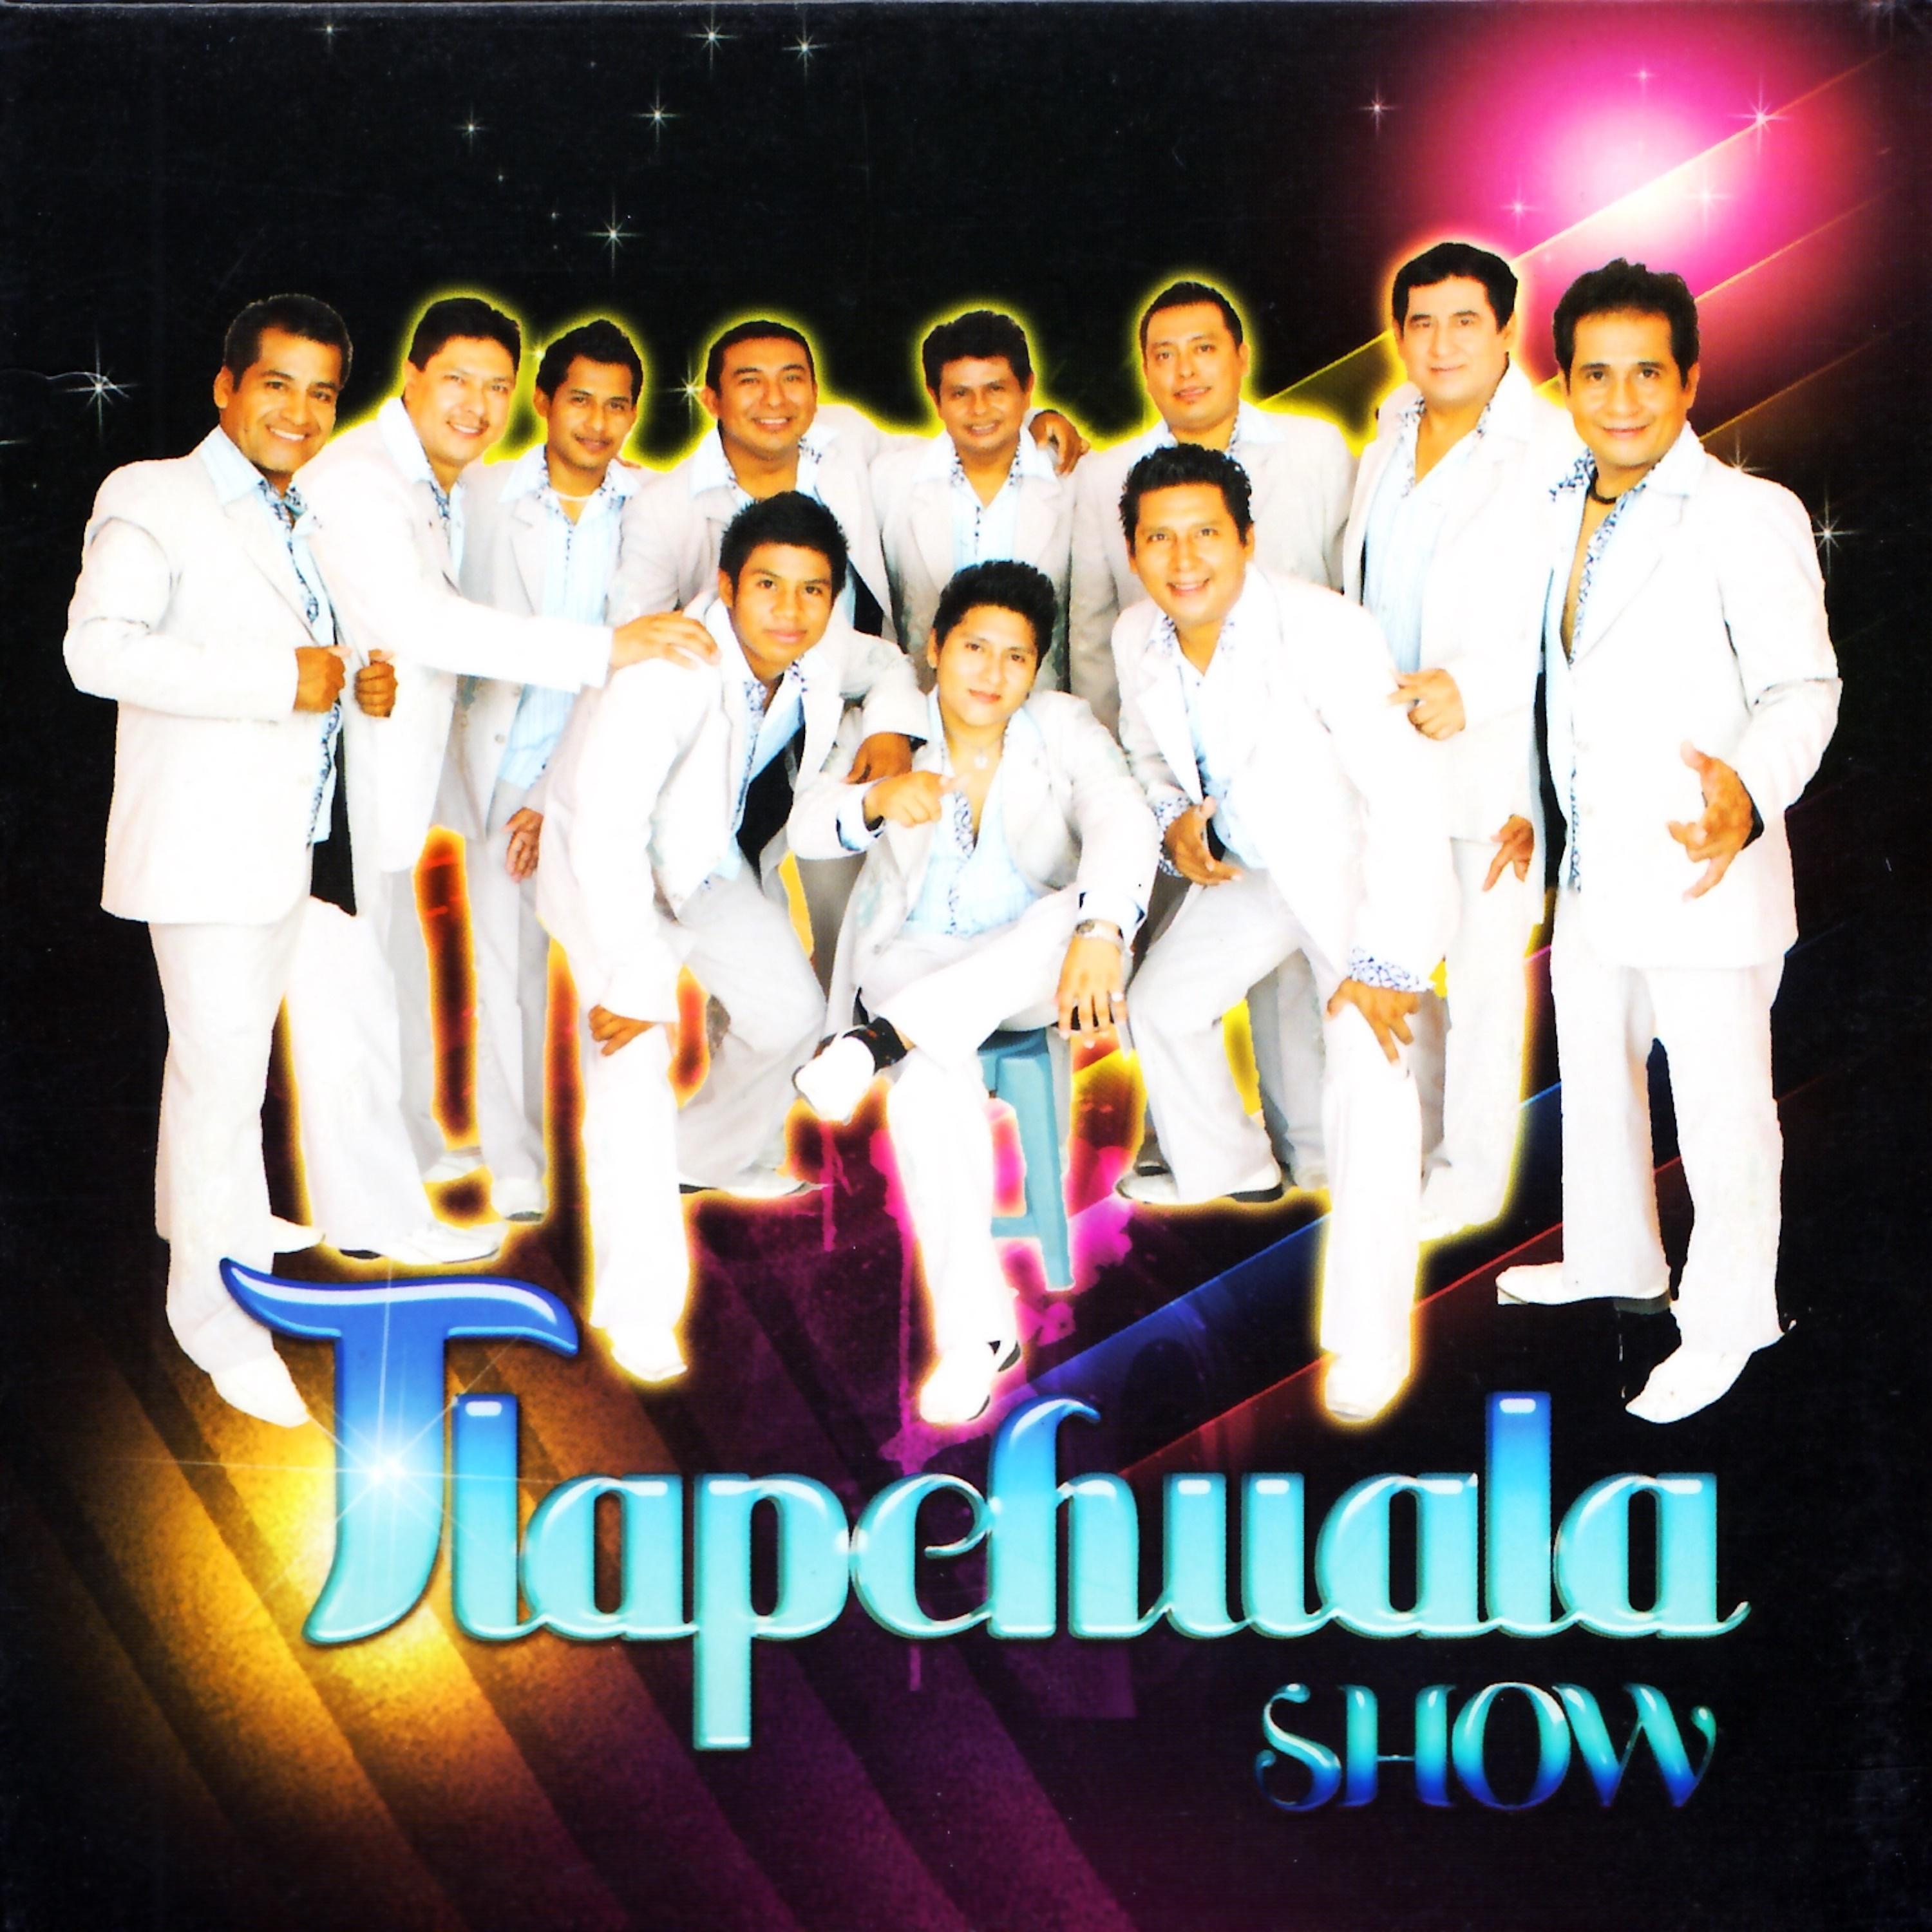 Tlapehuala Show - Cuando Estás Junto a Mi